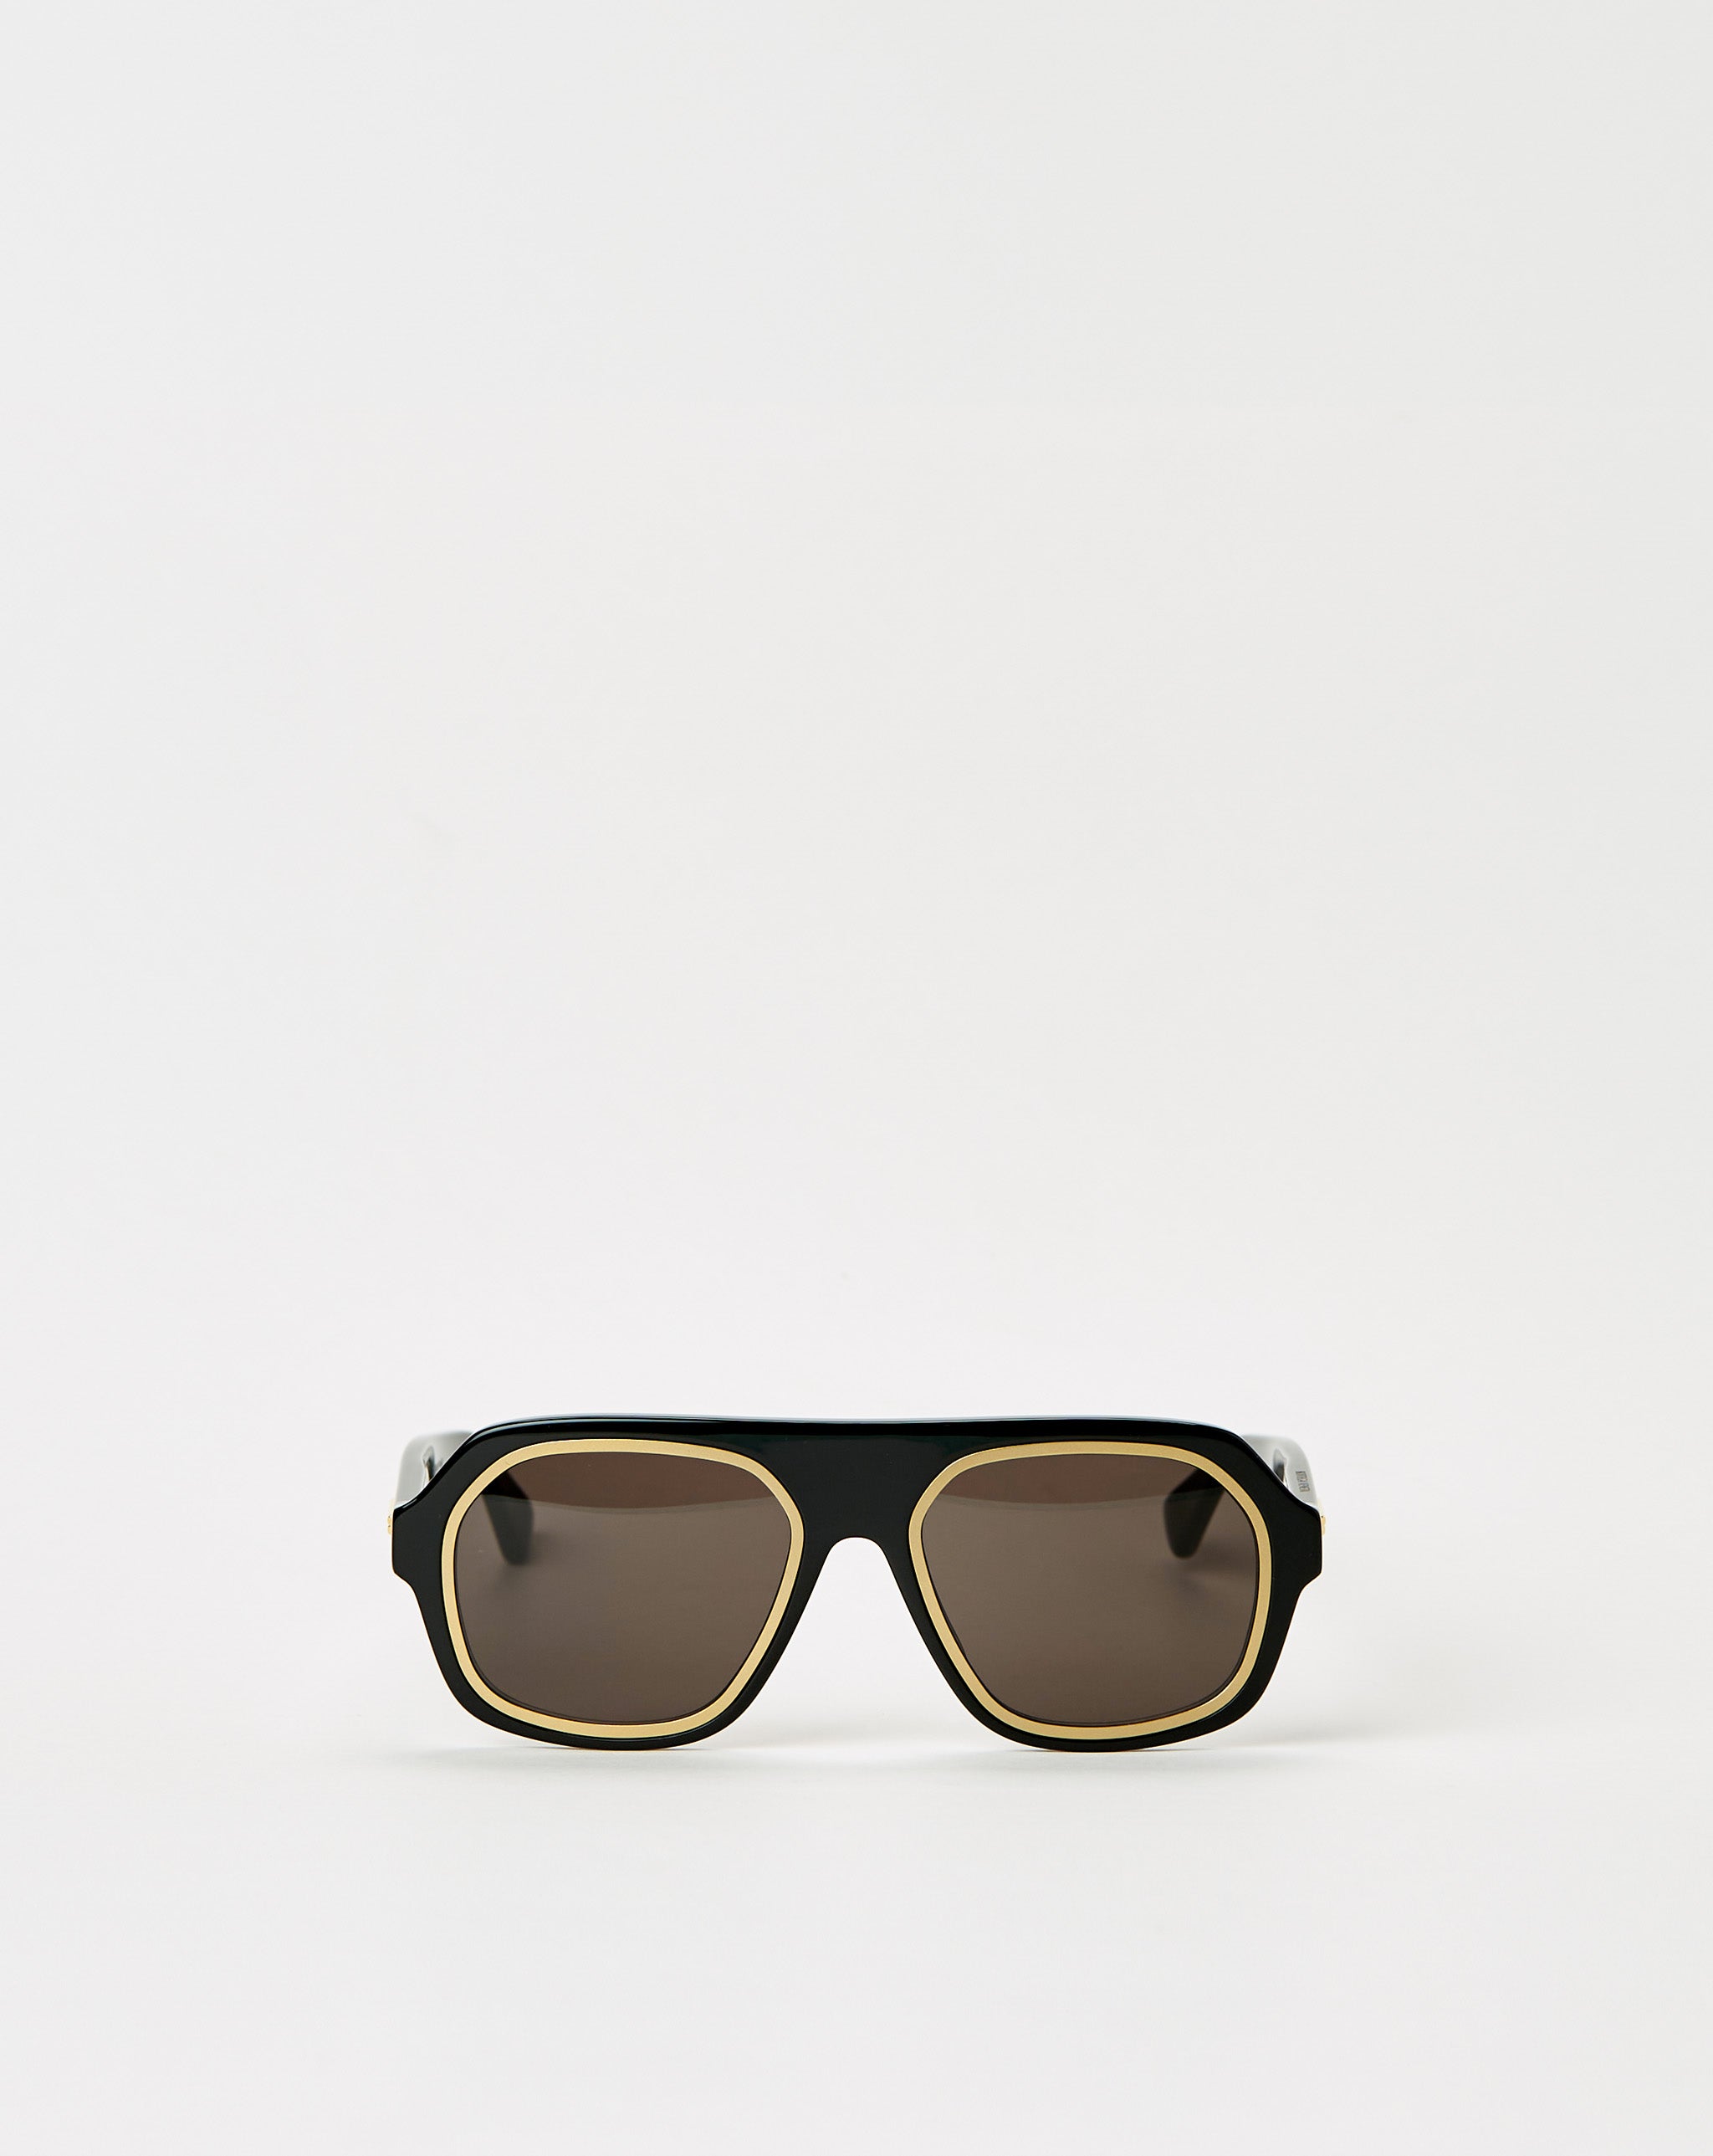 Bottega Veneta Rim Aviator Sunglasses  - XHIBITION